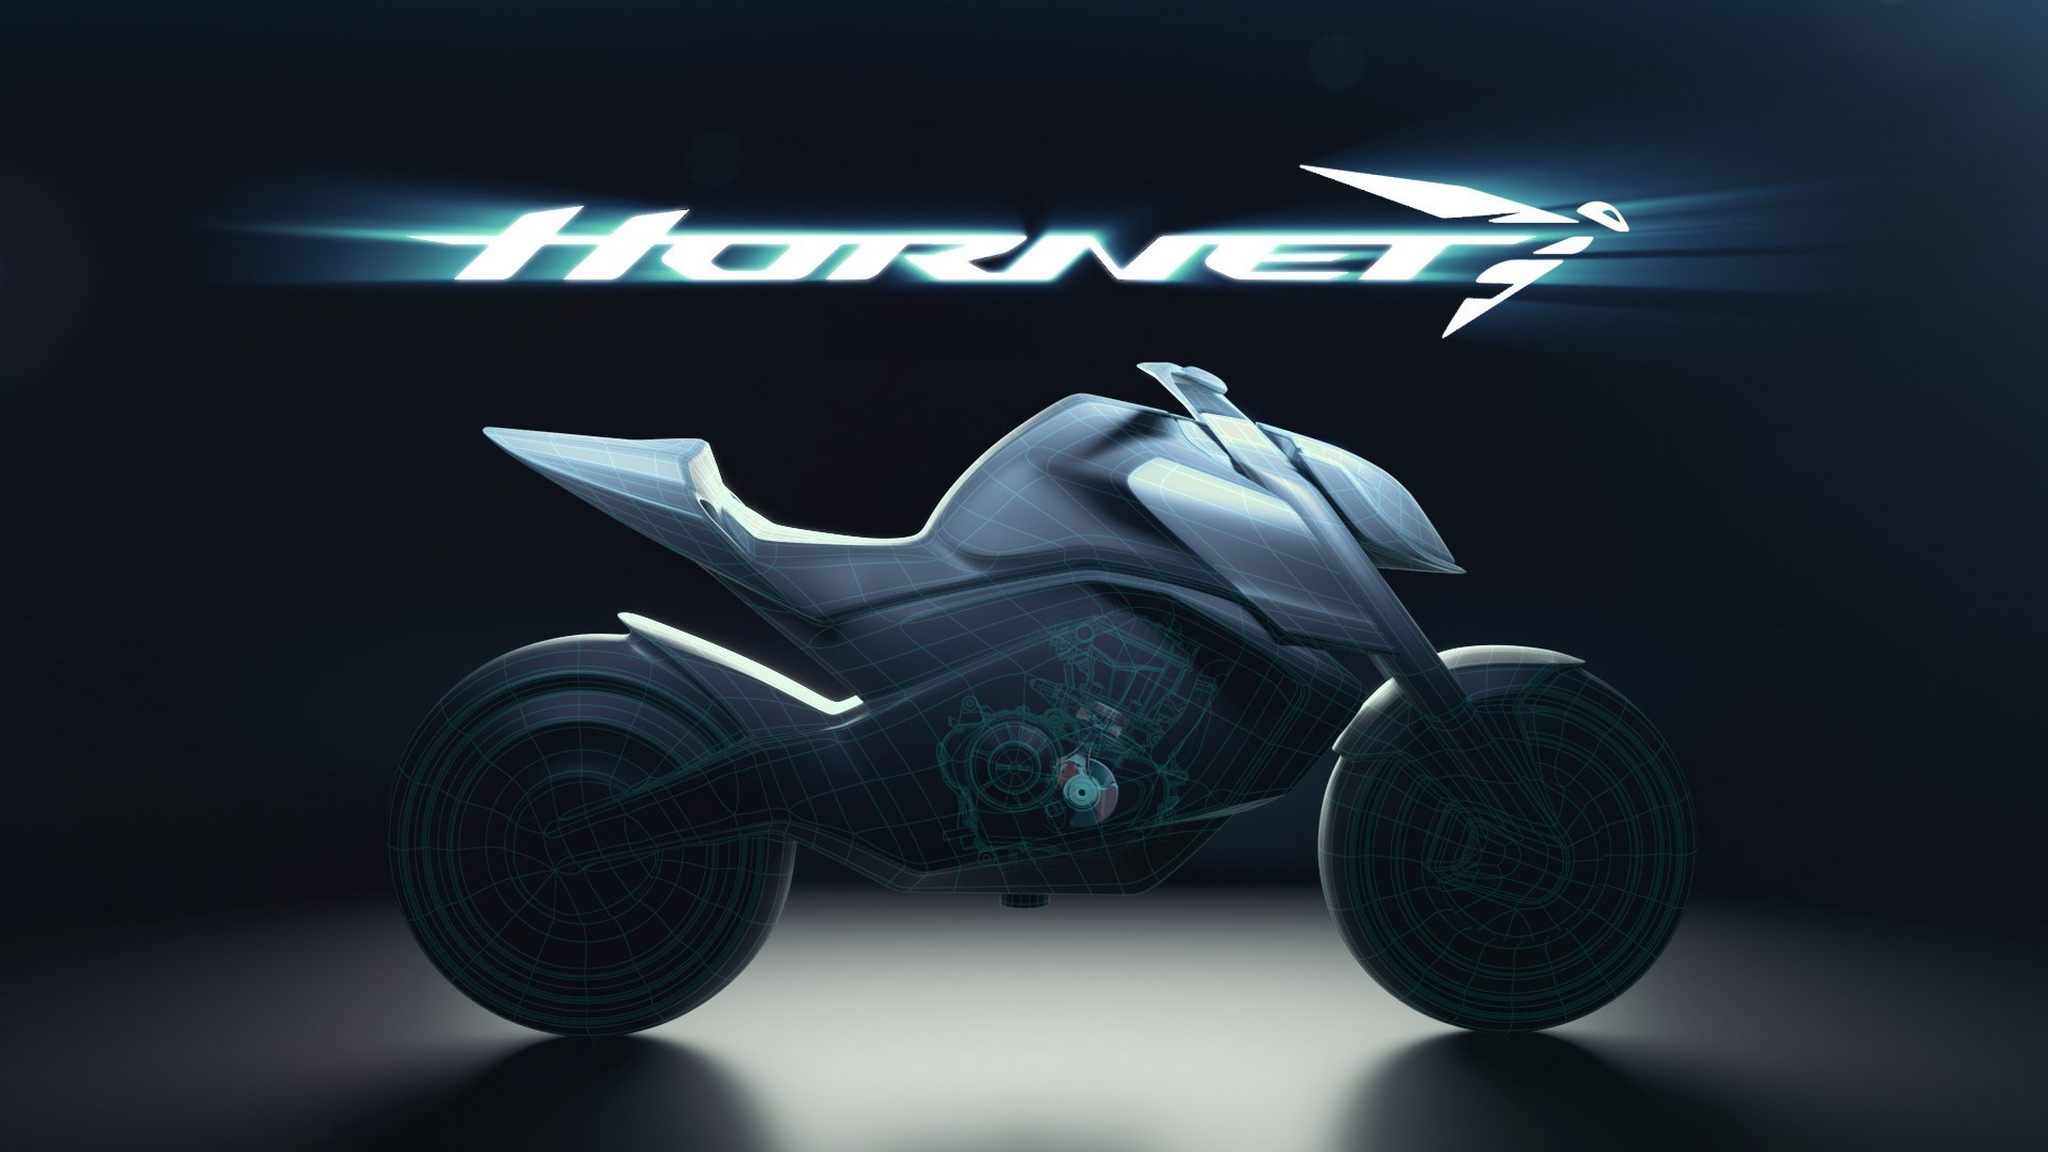 357797 The Hornet